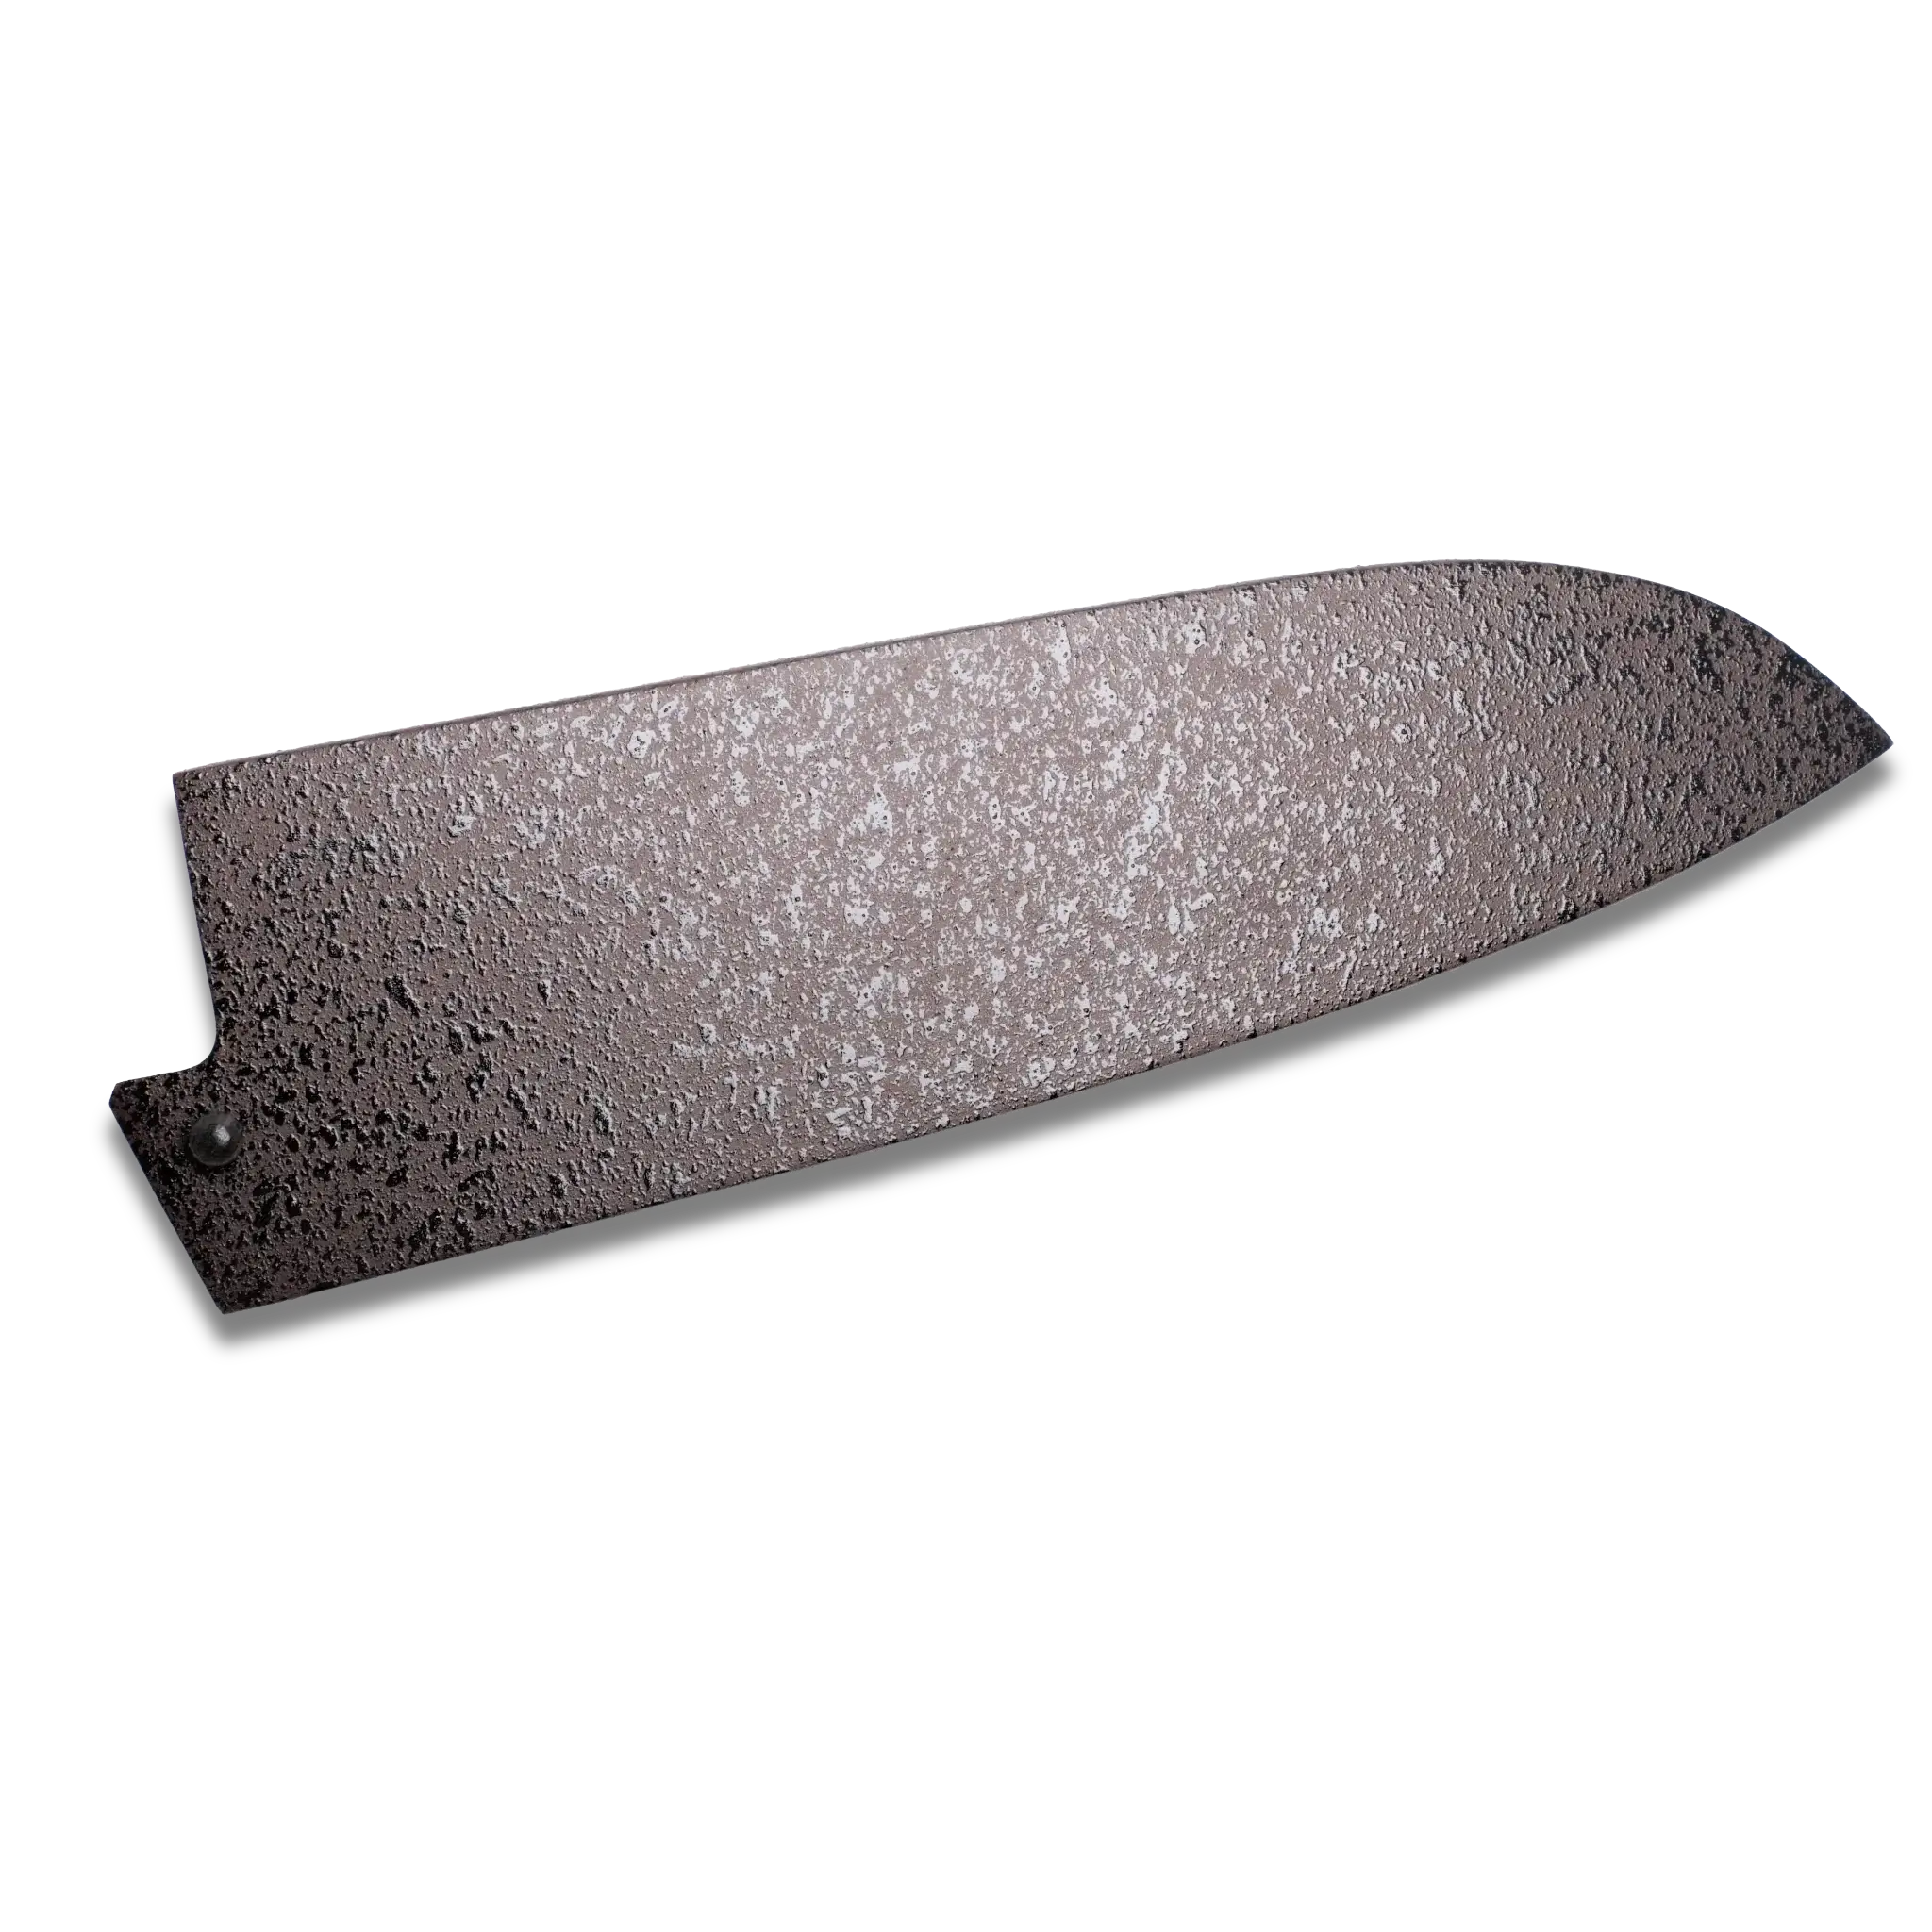 Sheath / Says Ho Wood (Magnolia) for  180mm Santoku Knife